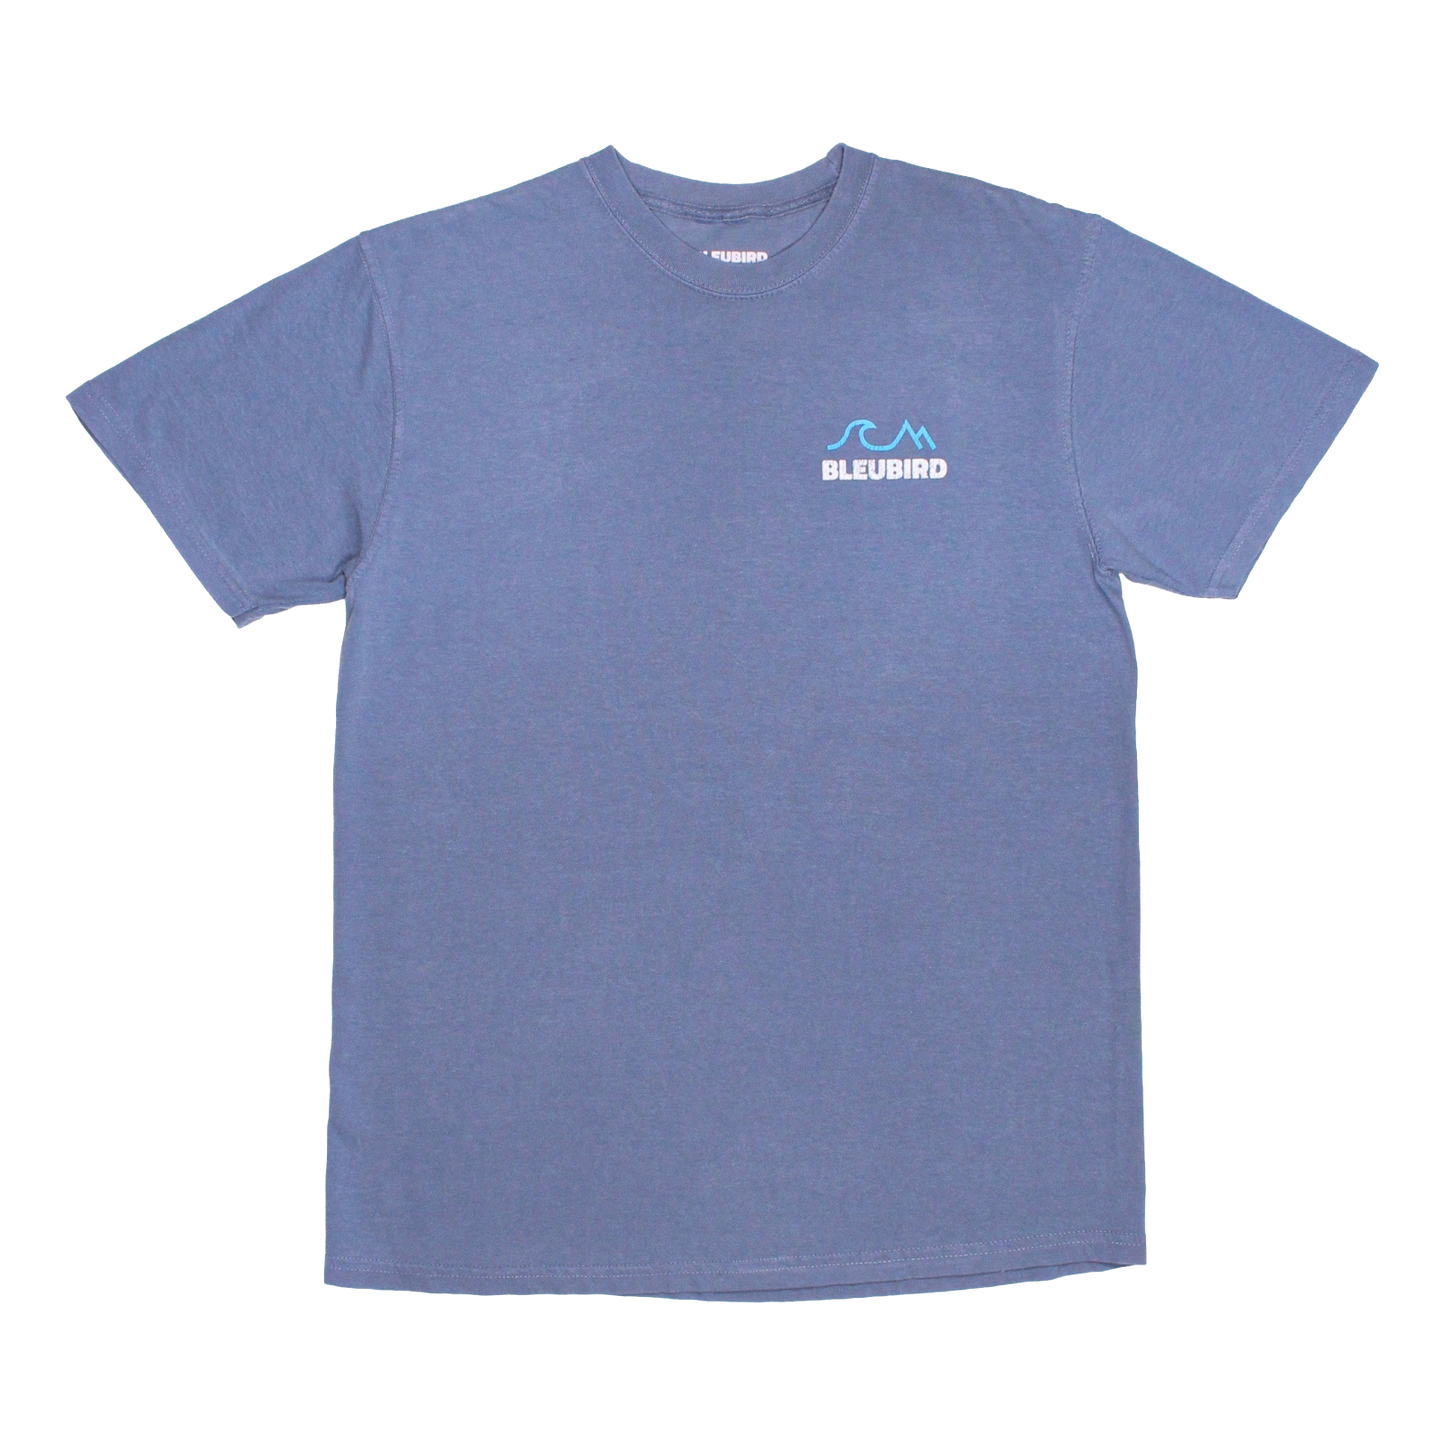 Bleubird Tides T-Shirt - Sky